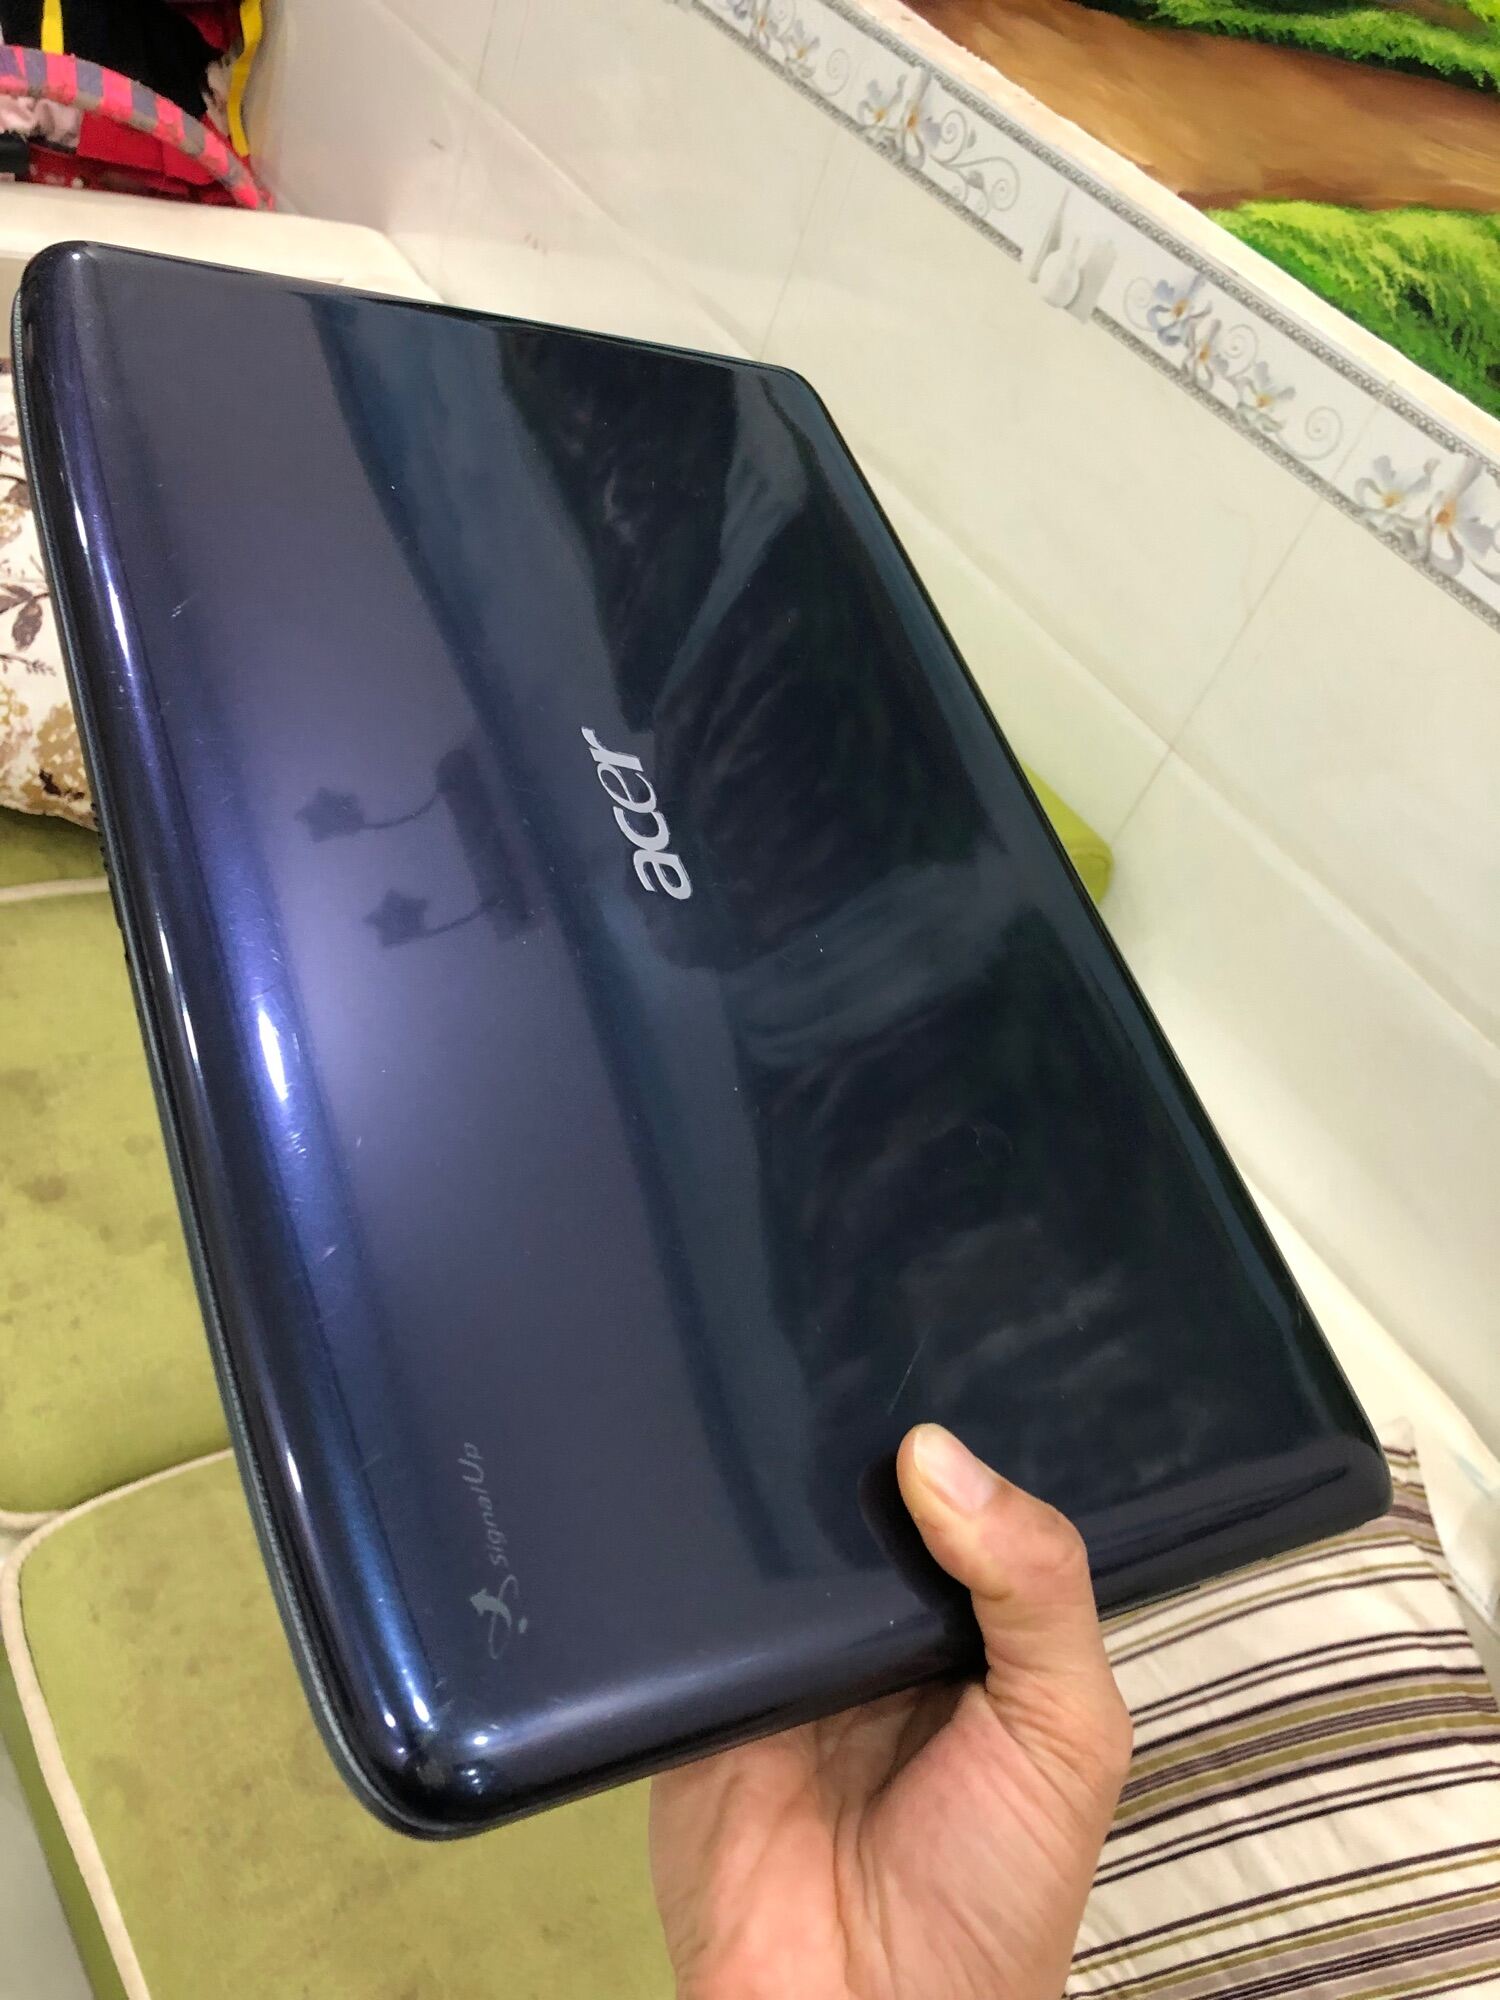 Bảng giá Laptop Acer 5738 văn phòng giải trí giá rẻ Phong Vũ